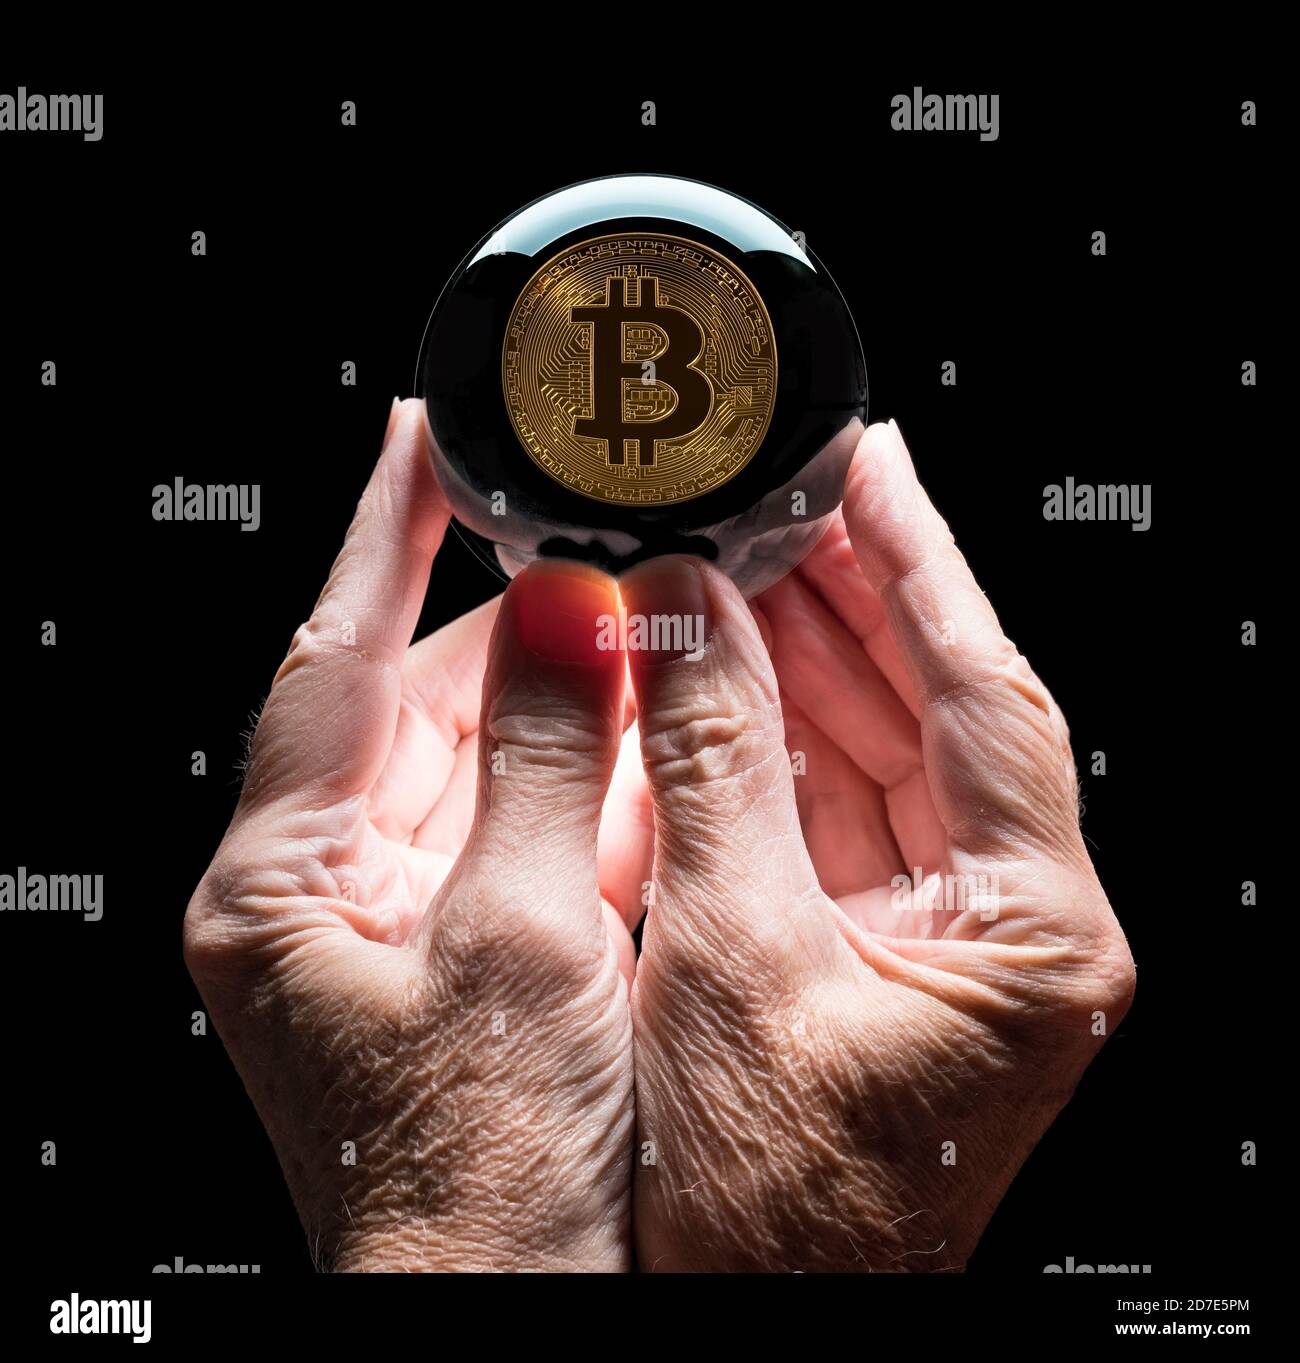 Futures di cristallo o palla che dice fortuna che riflette una moneta di Bitcoin come concetto per prevedere il tasso di cambio futuro per valuta Foto Stock